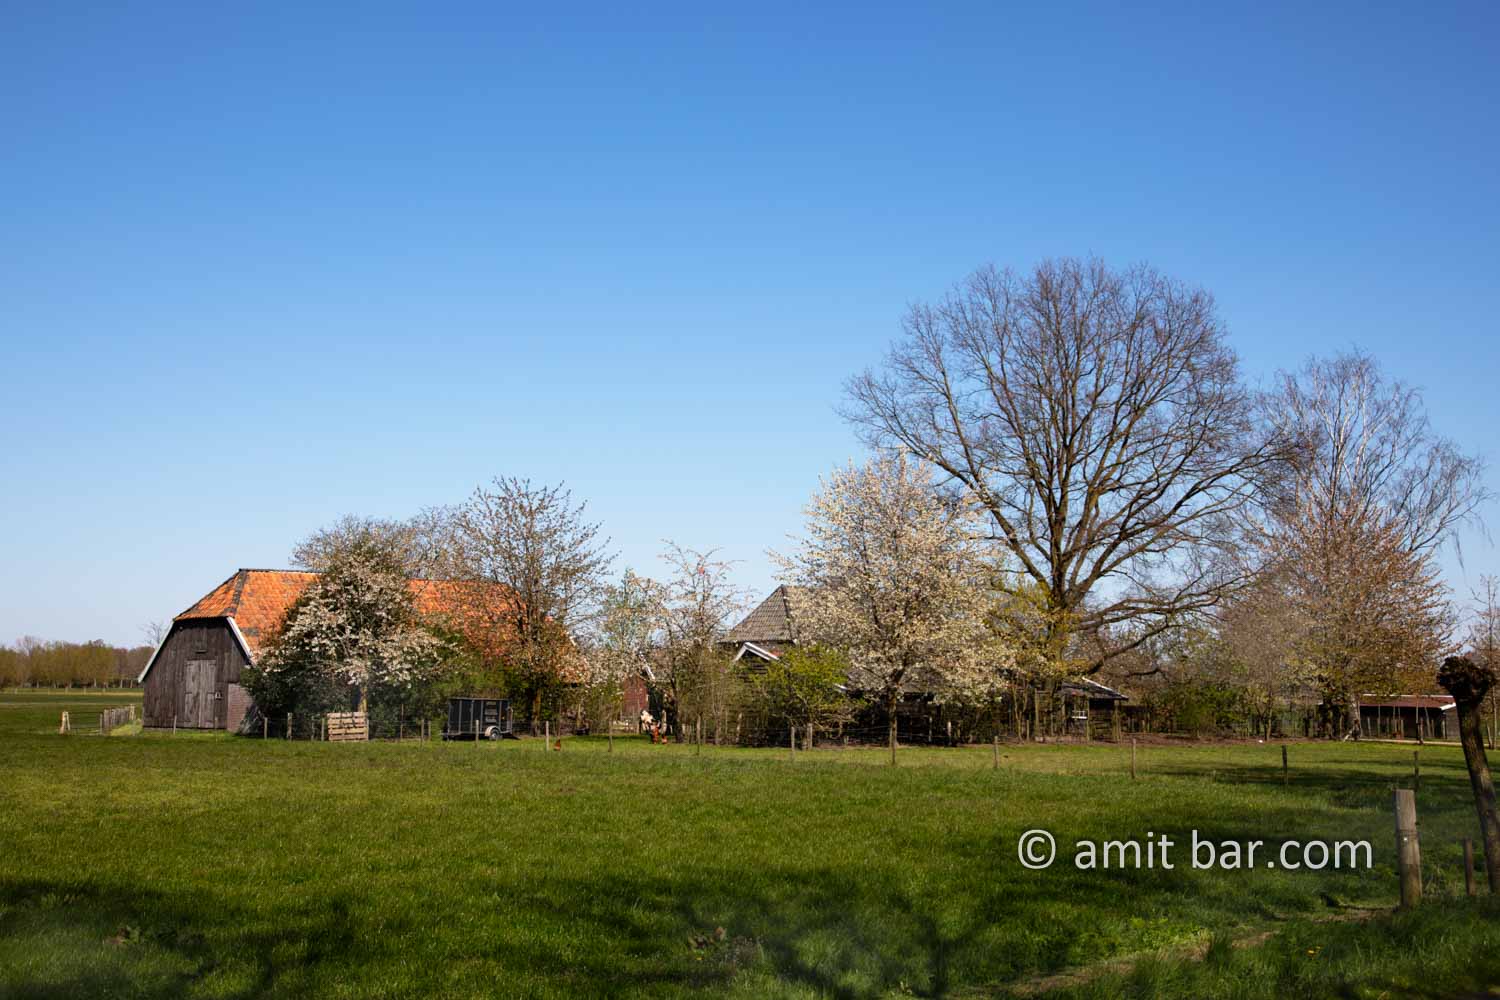 Landscape Spring 2021 VI: Spring time in the Achterhoek, The Netherlands